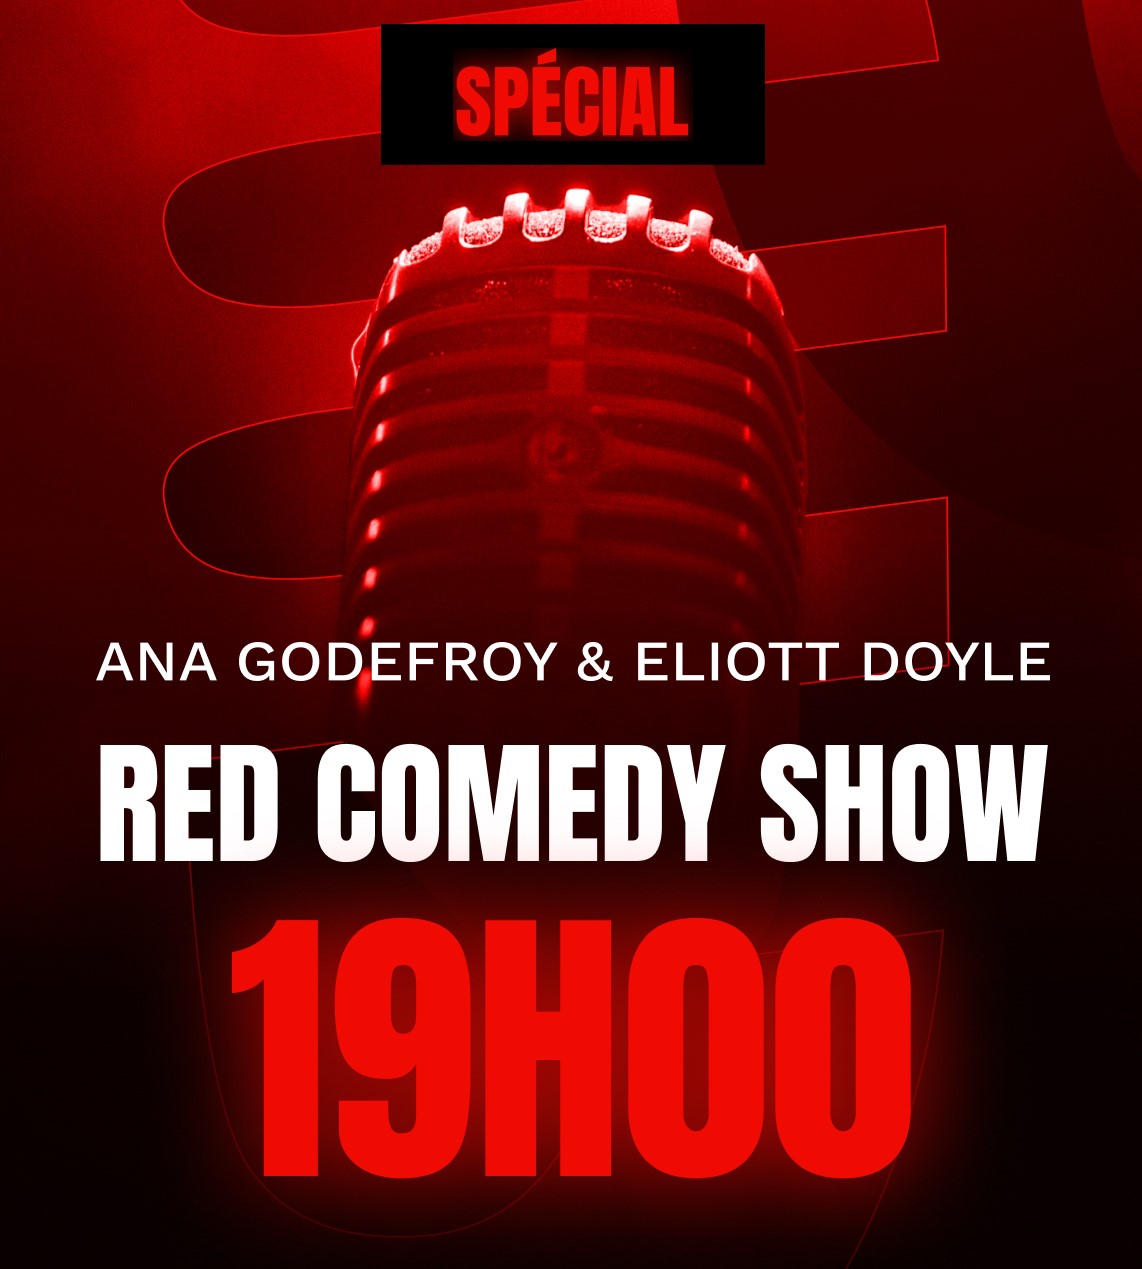 Red Comedy show Spécial - 20h30